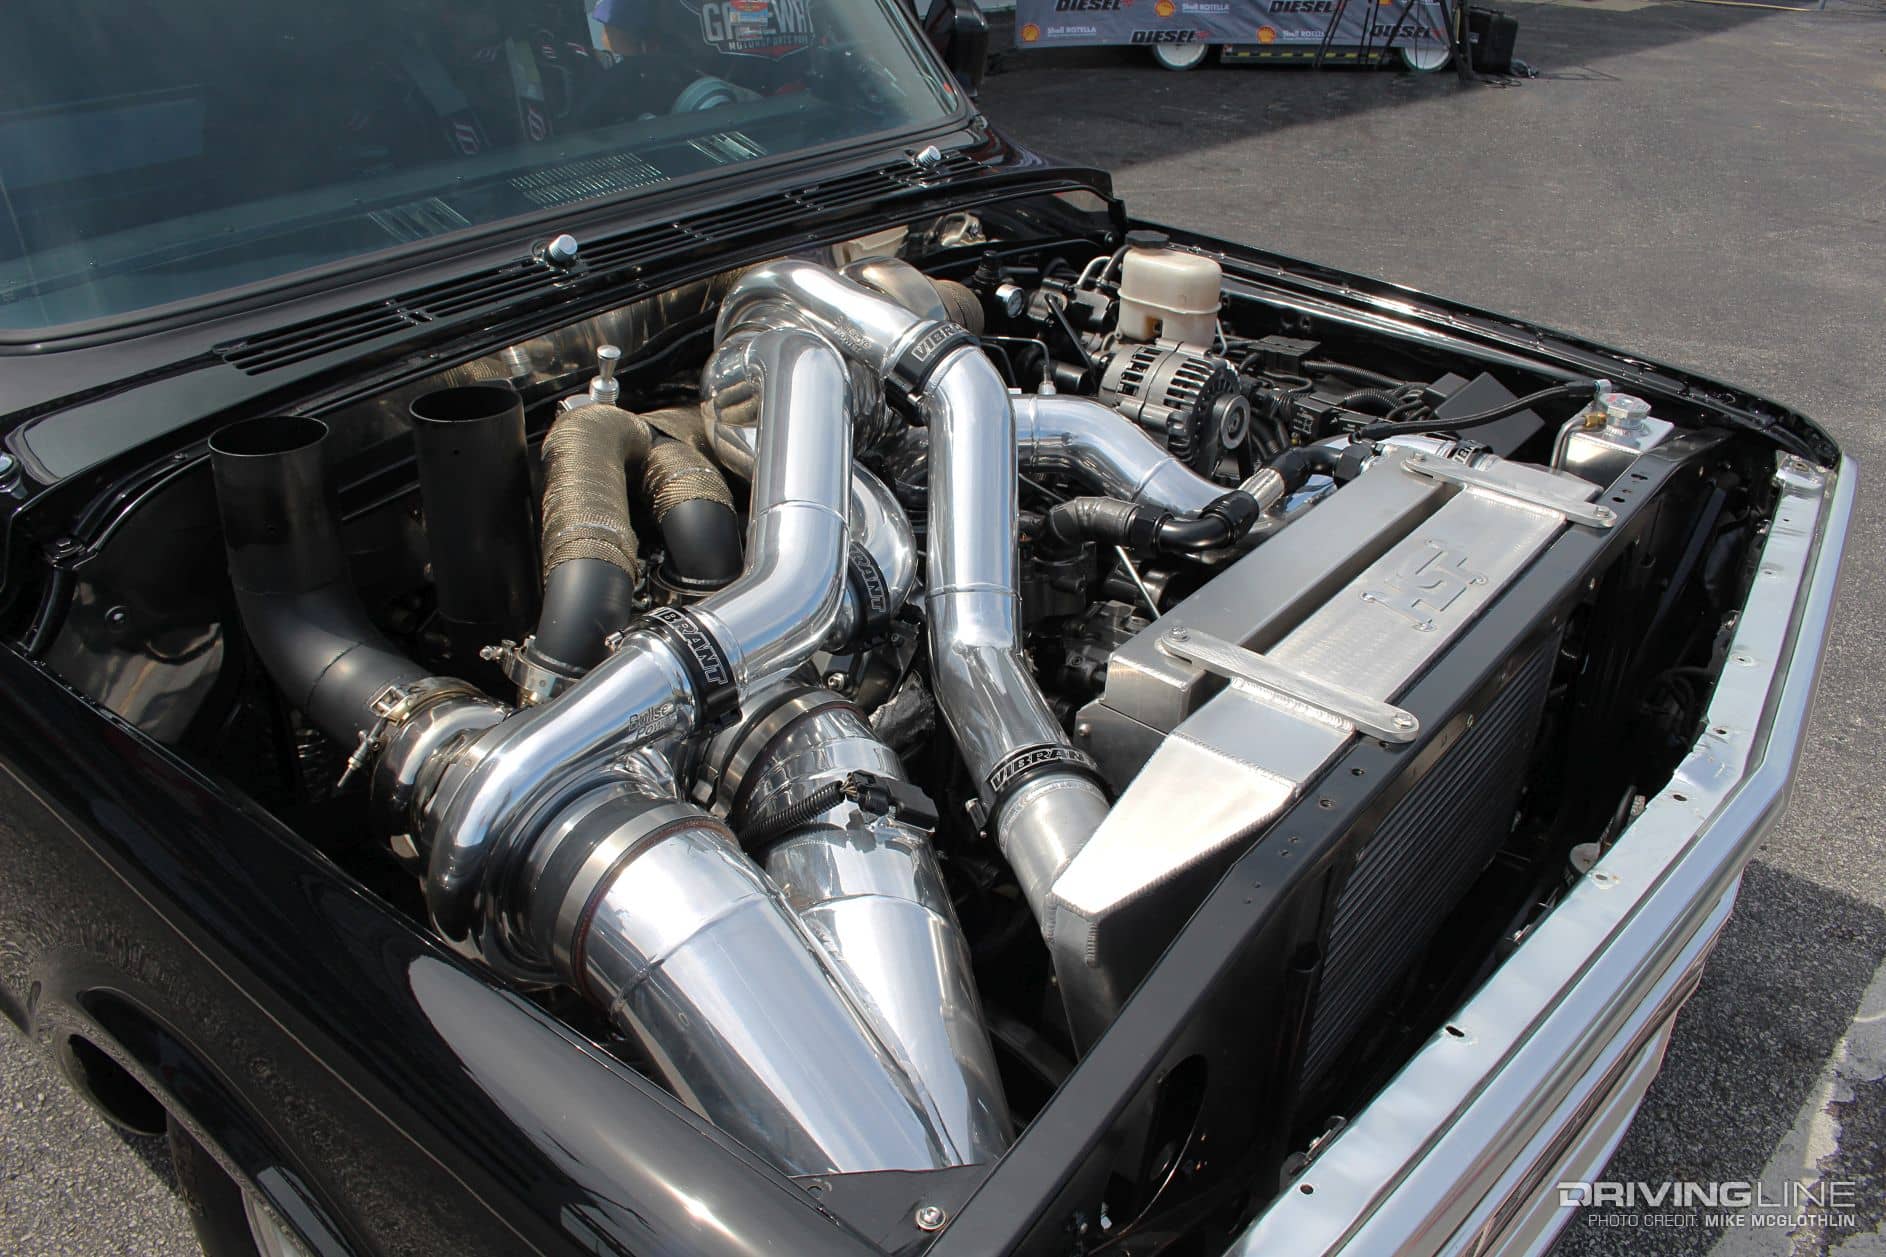 1969 Chevy C10 con un Duramax turbo triple en el compartimiento del motor